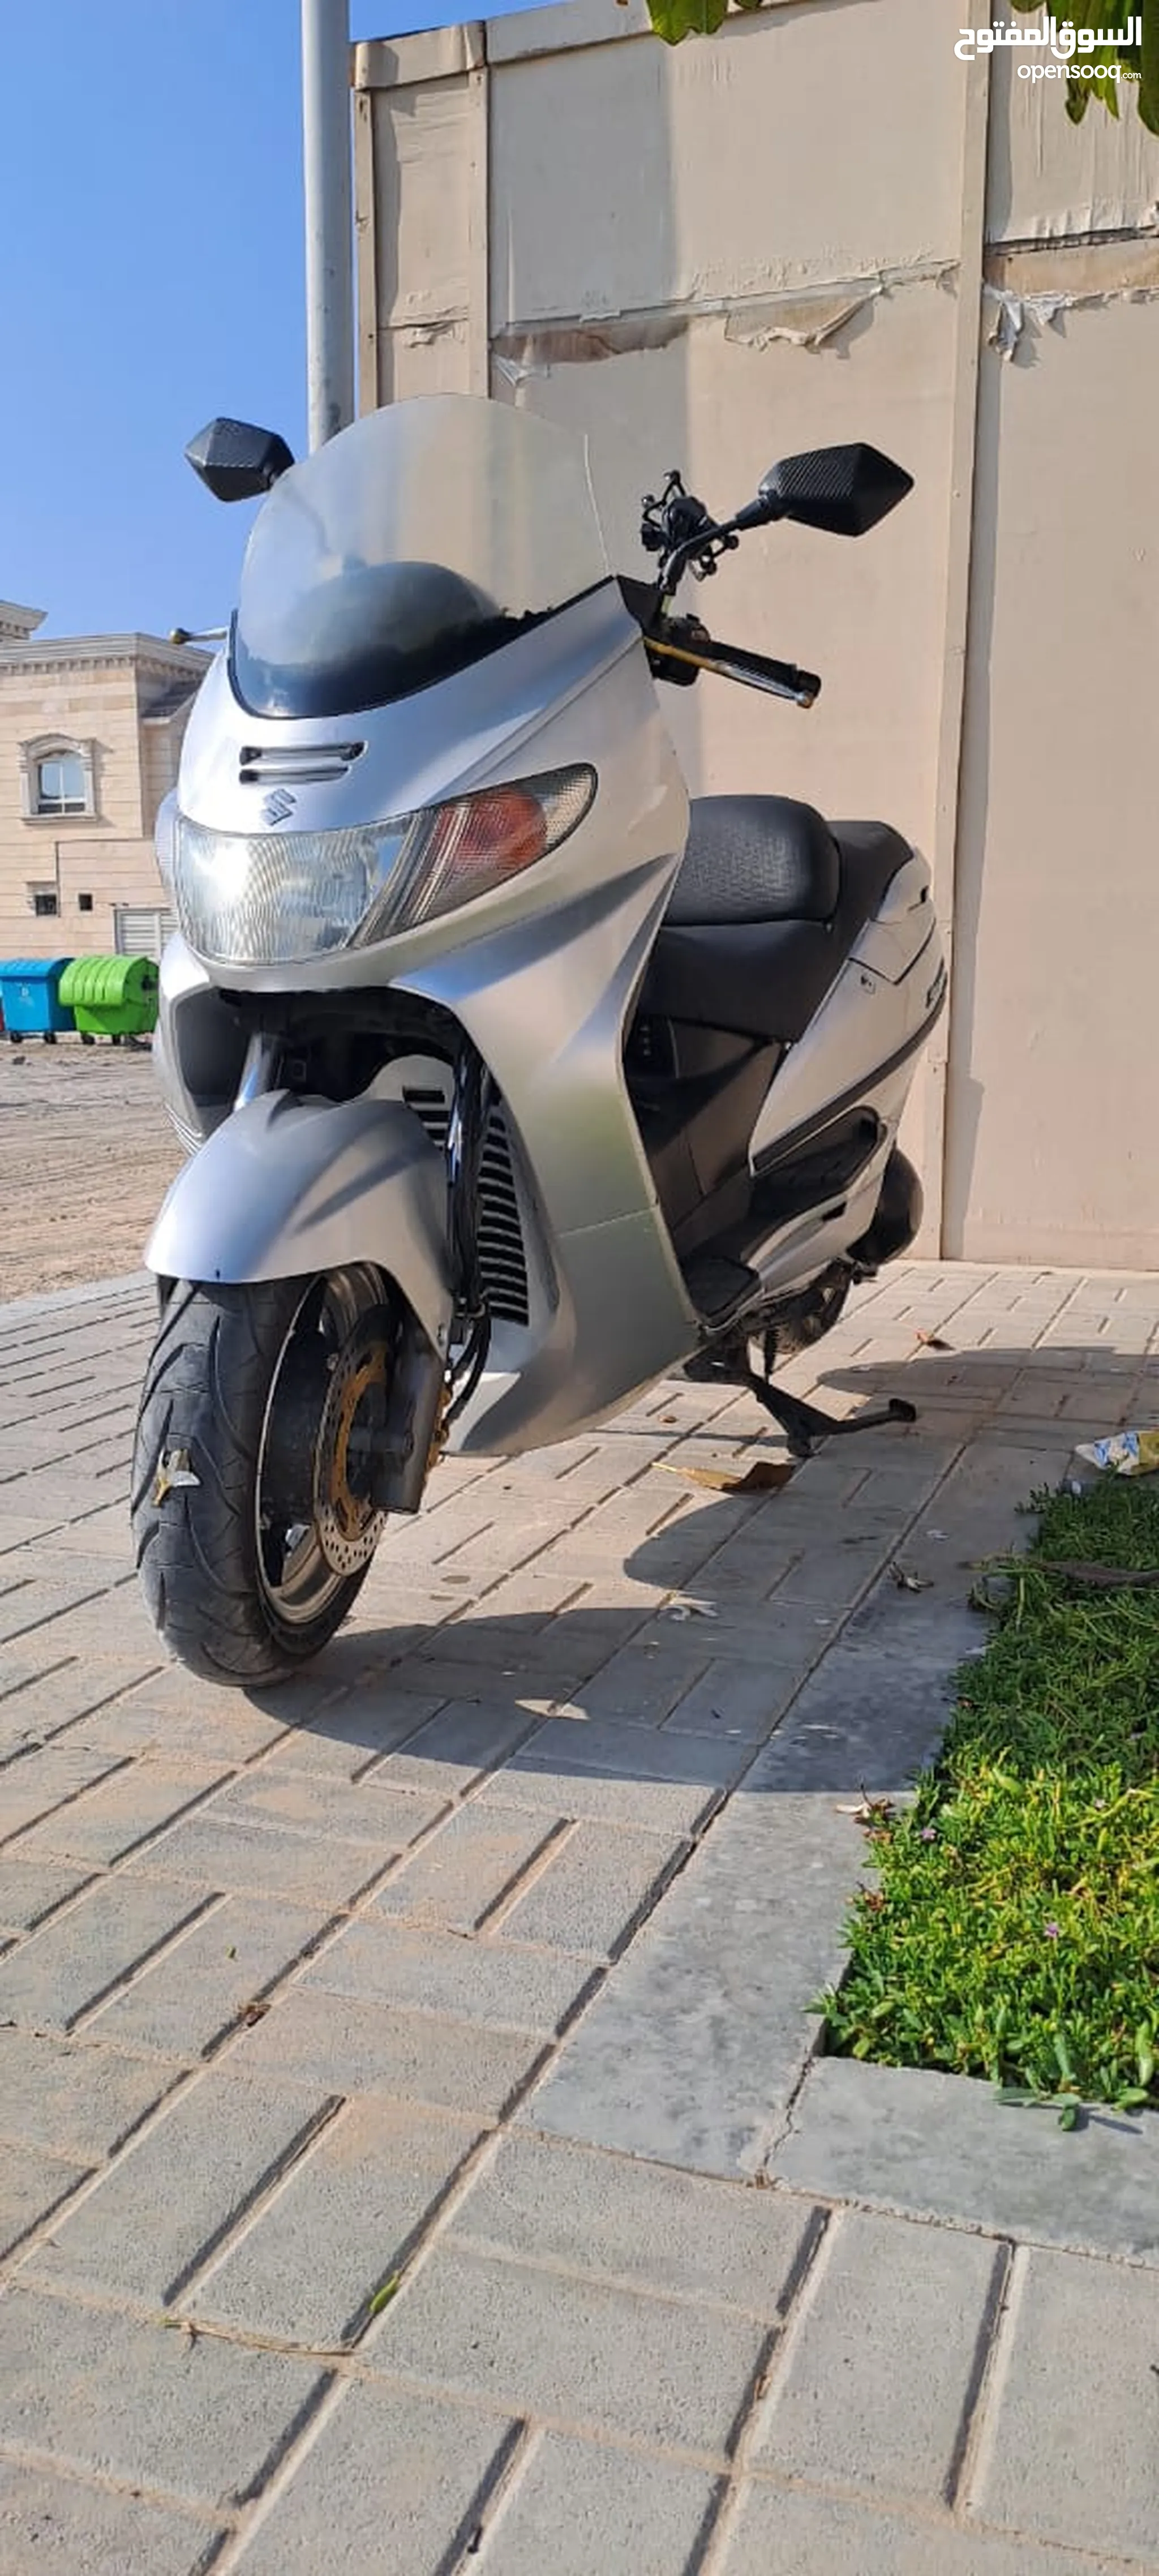 دباب سوزوكي أخرى للبيع في الإمارات : دراجات مستعملة وجديدة : ارخص الاسعار |  السوق المفتوح